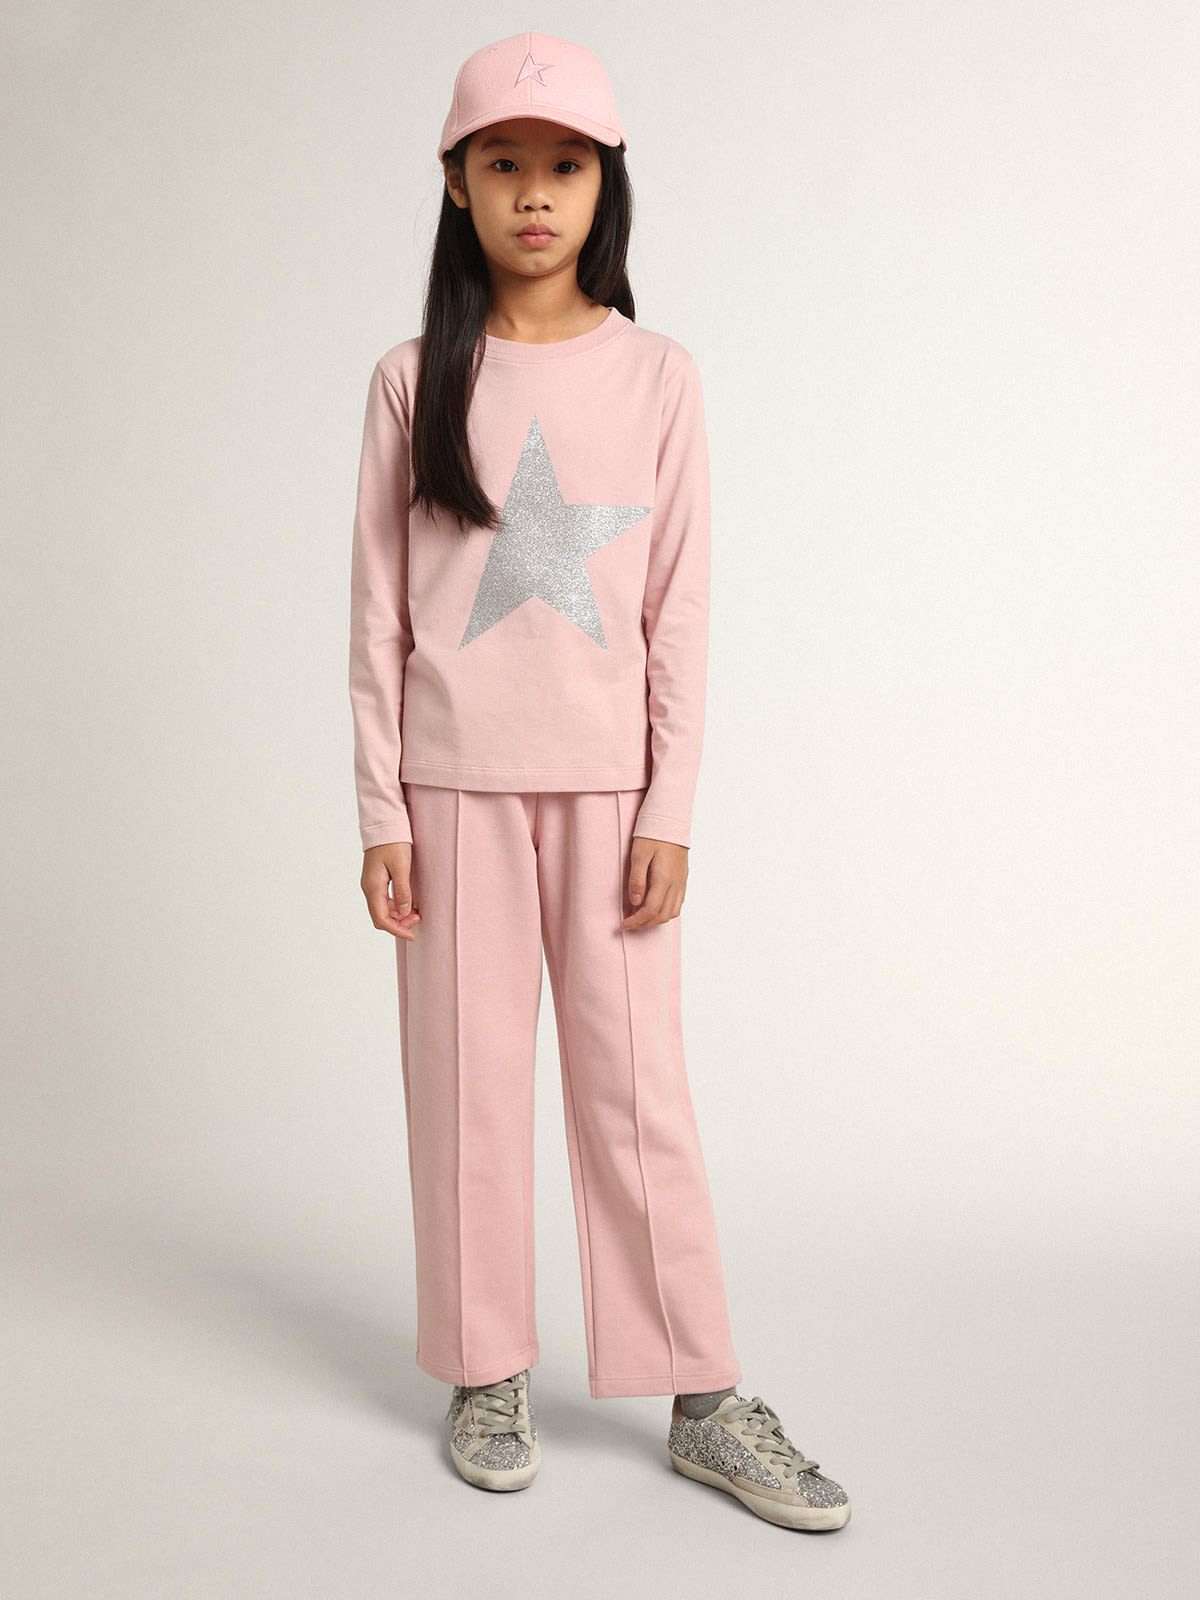 Golden Goose - Calça de jogging rosa Coleção Star com estrela de glitter prateado na frente in 